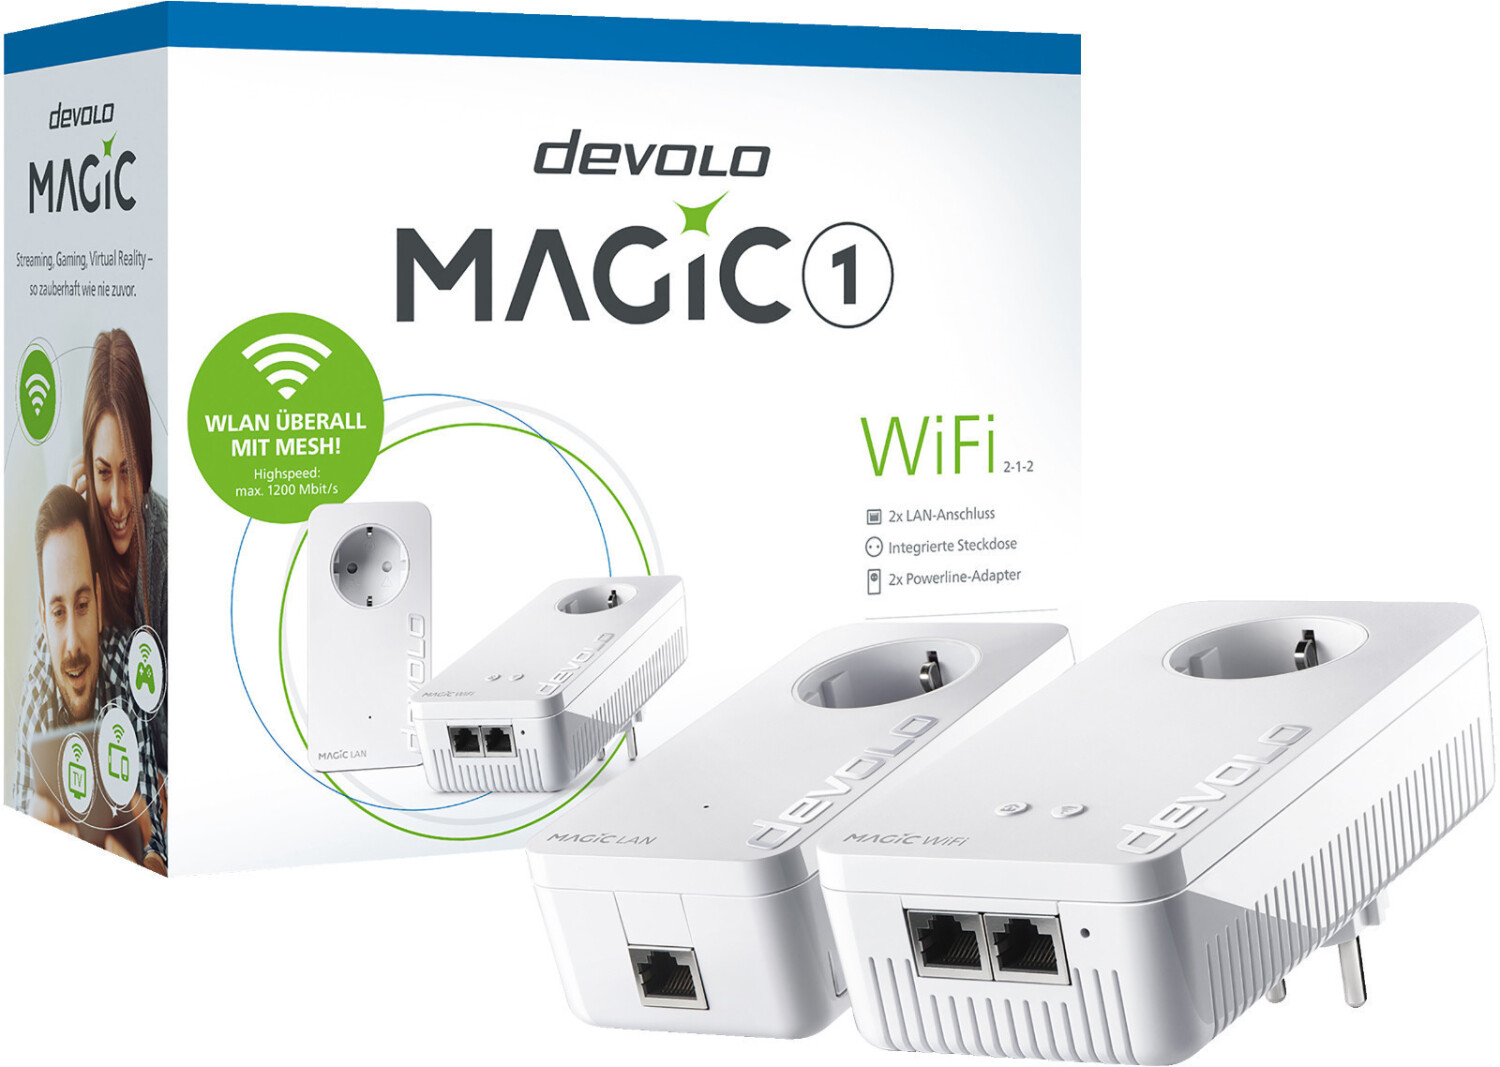 devolo Magic 1 LAN + devolo Magic 1 Wi-Fi